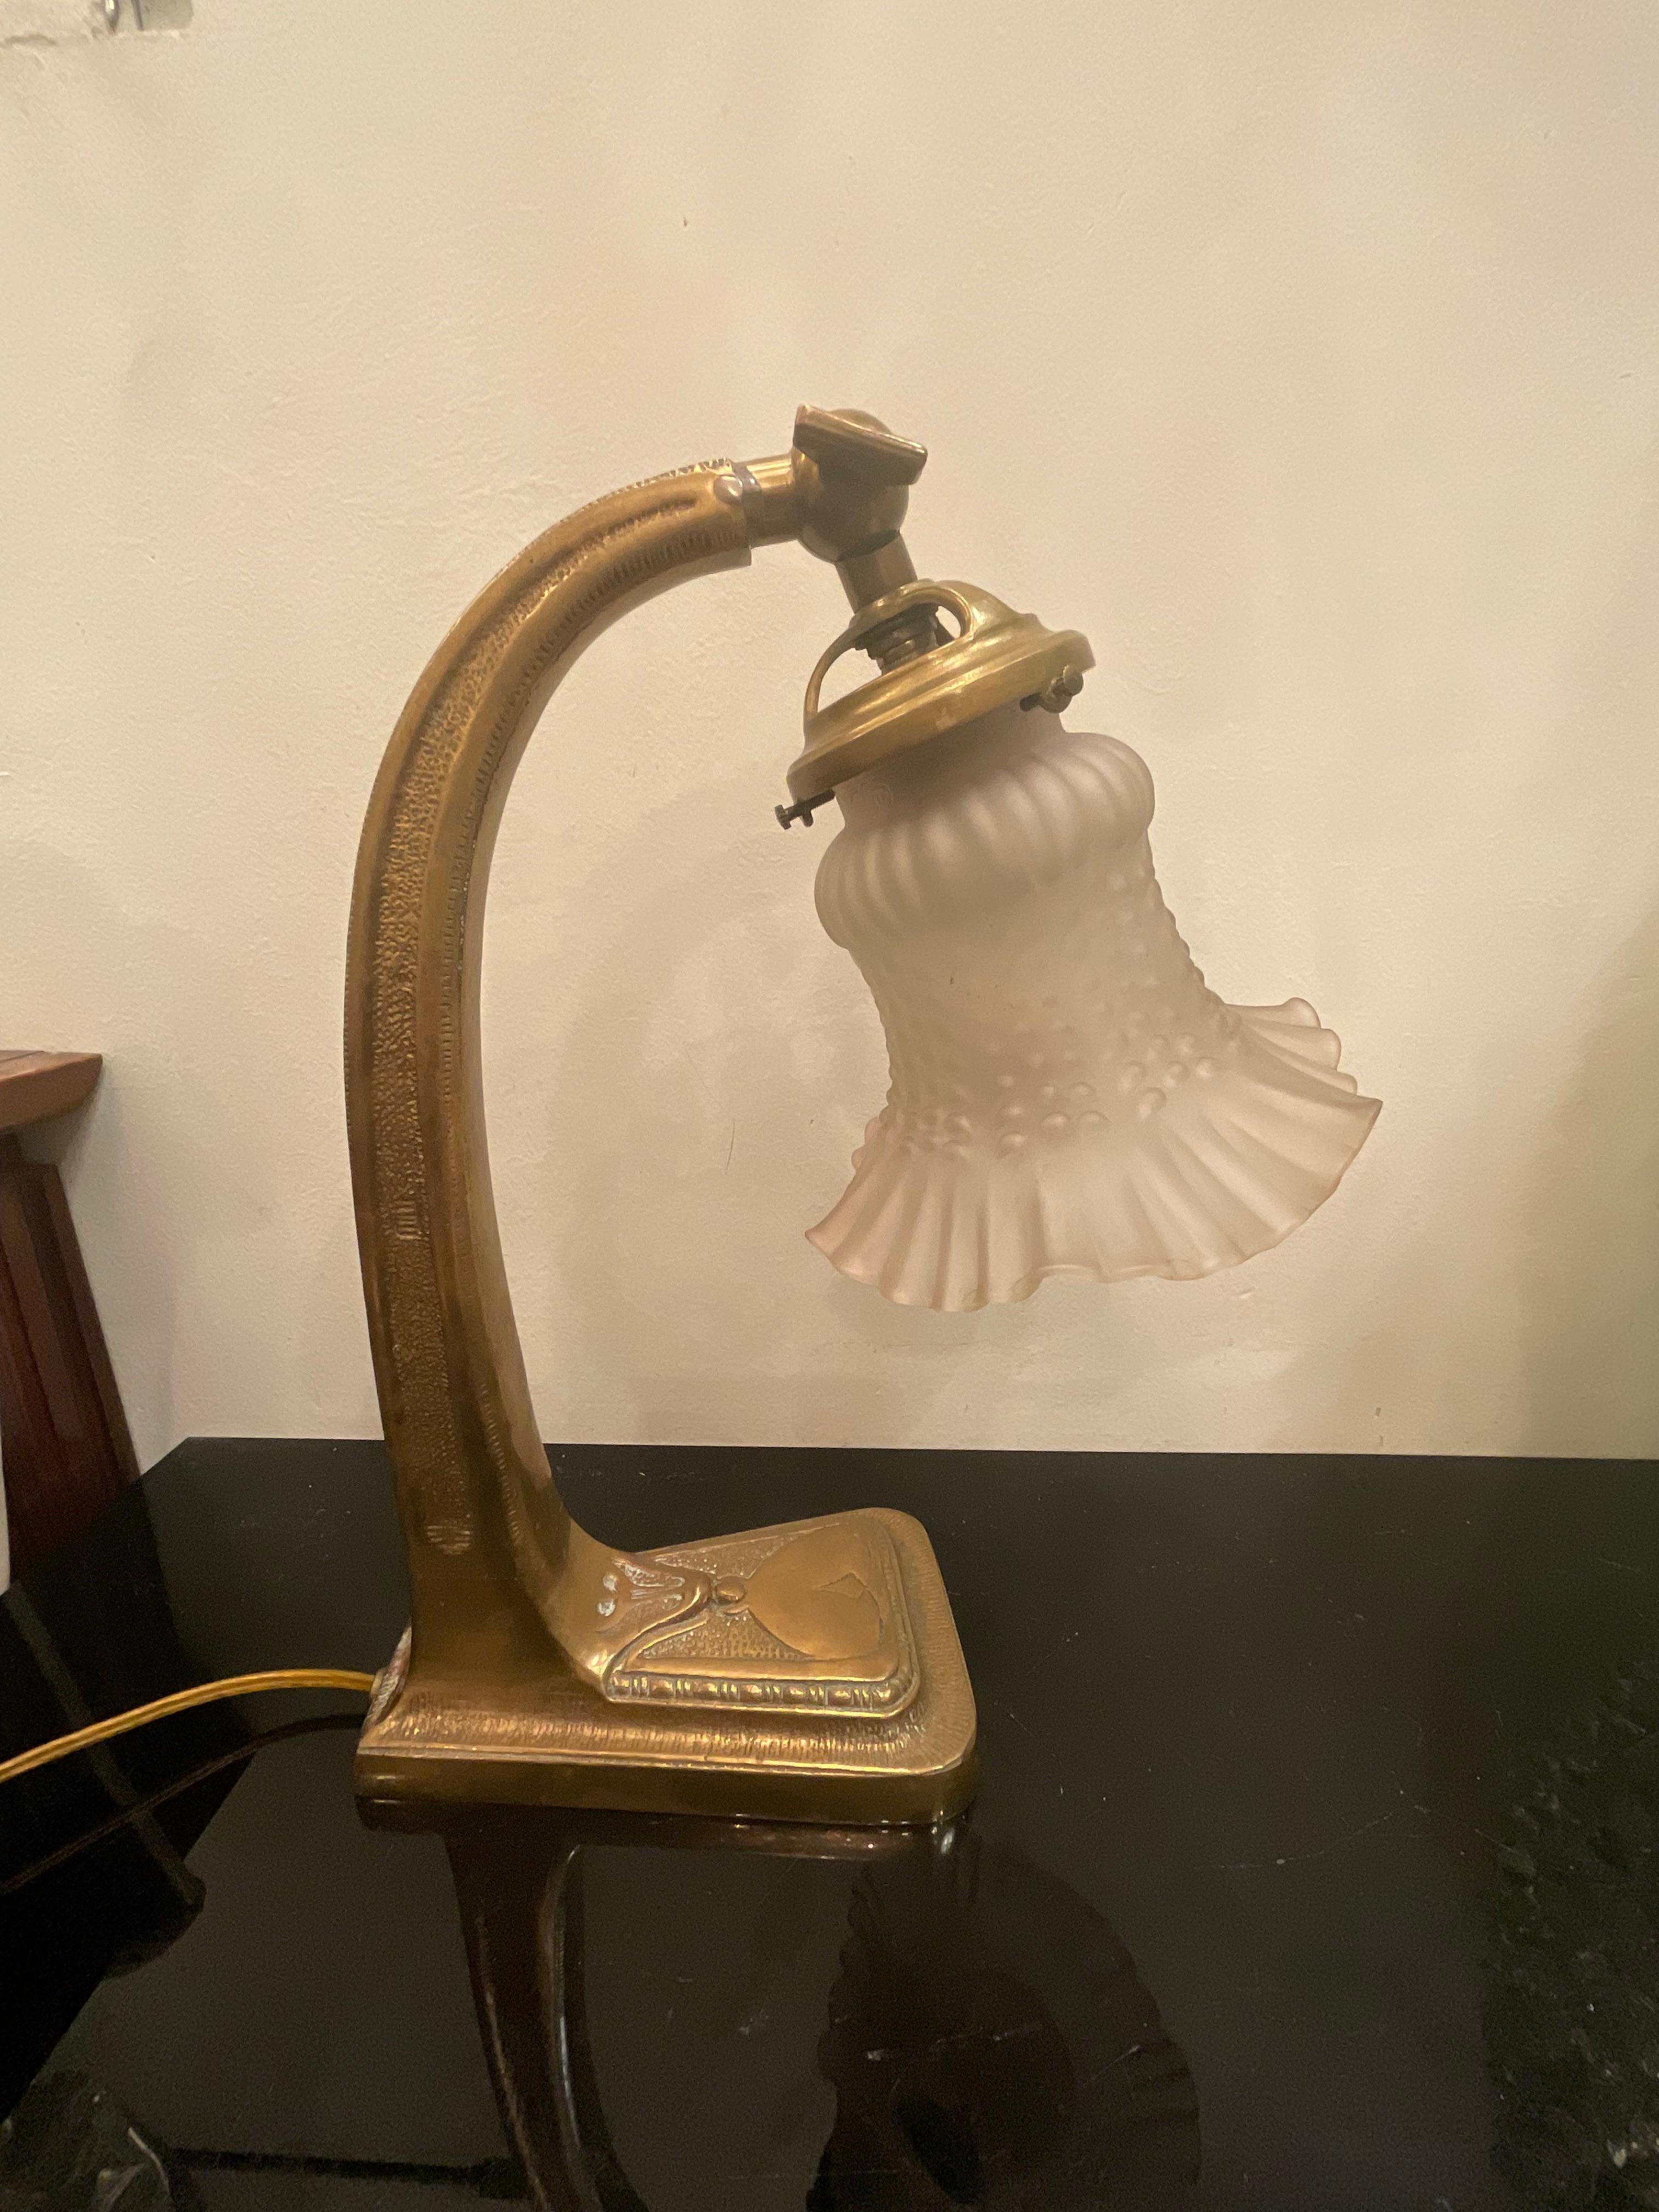 Una lampada del periodo liberty circa 1920, in bronzo e vetro, ottime condizioni, funzionante.
Una linea raffinata ed elegante per gli amanti del liberty.